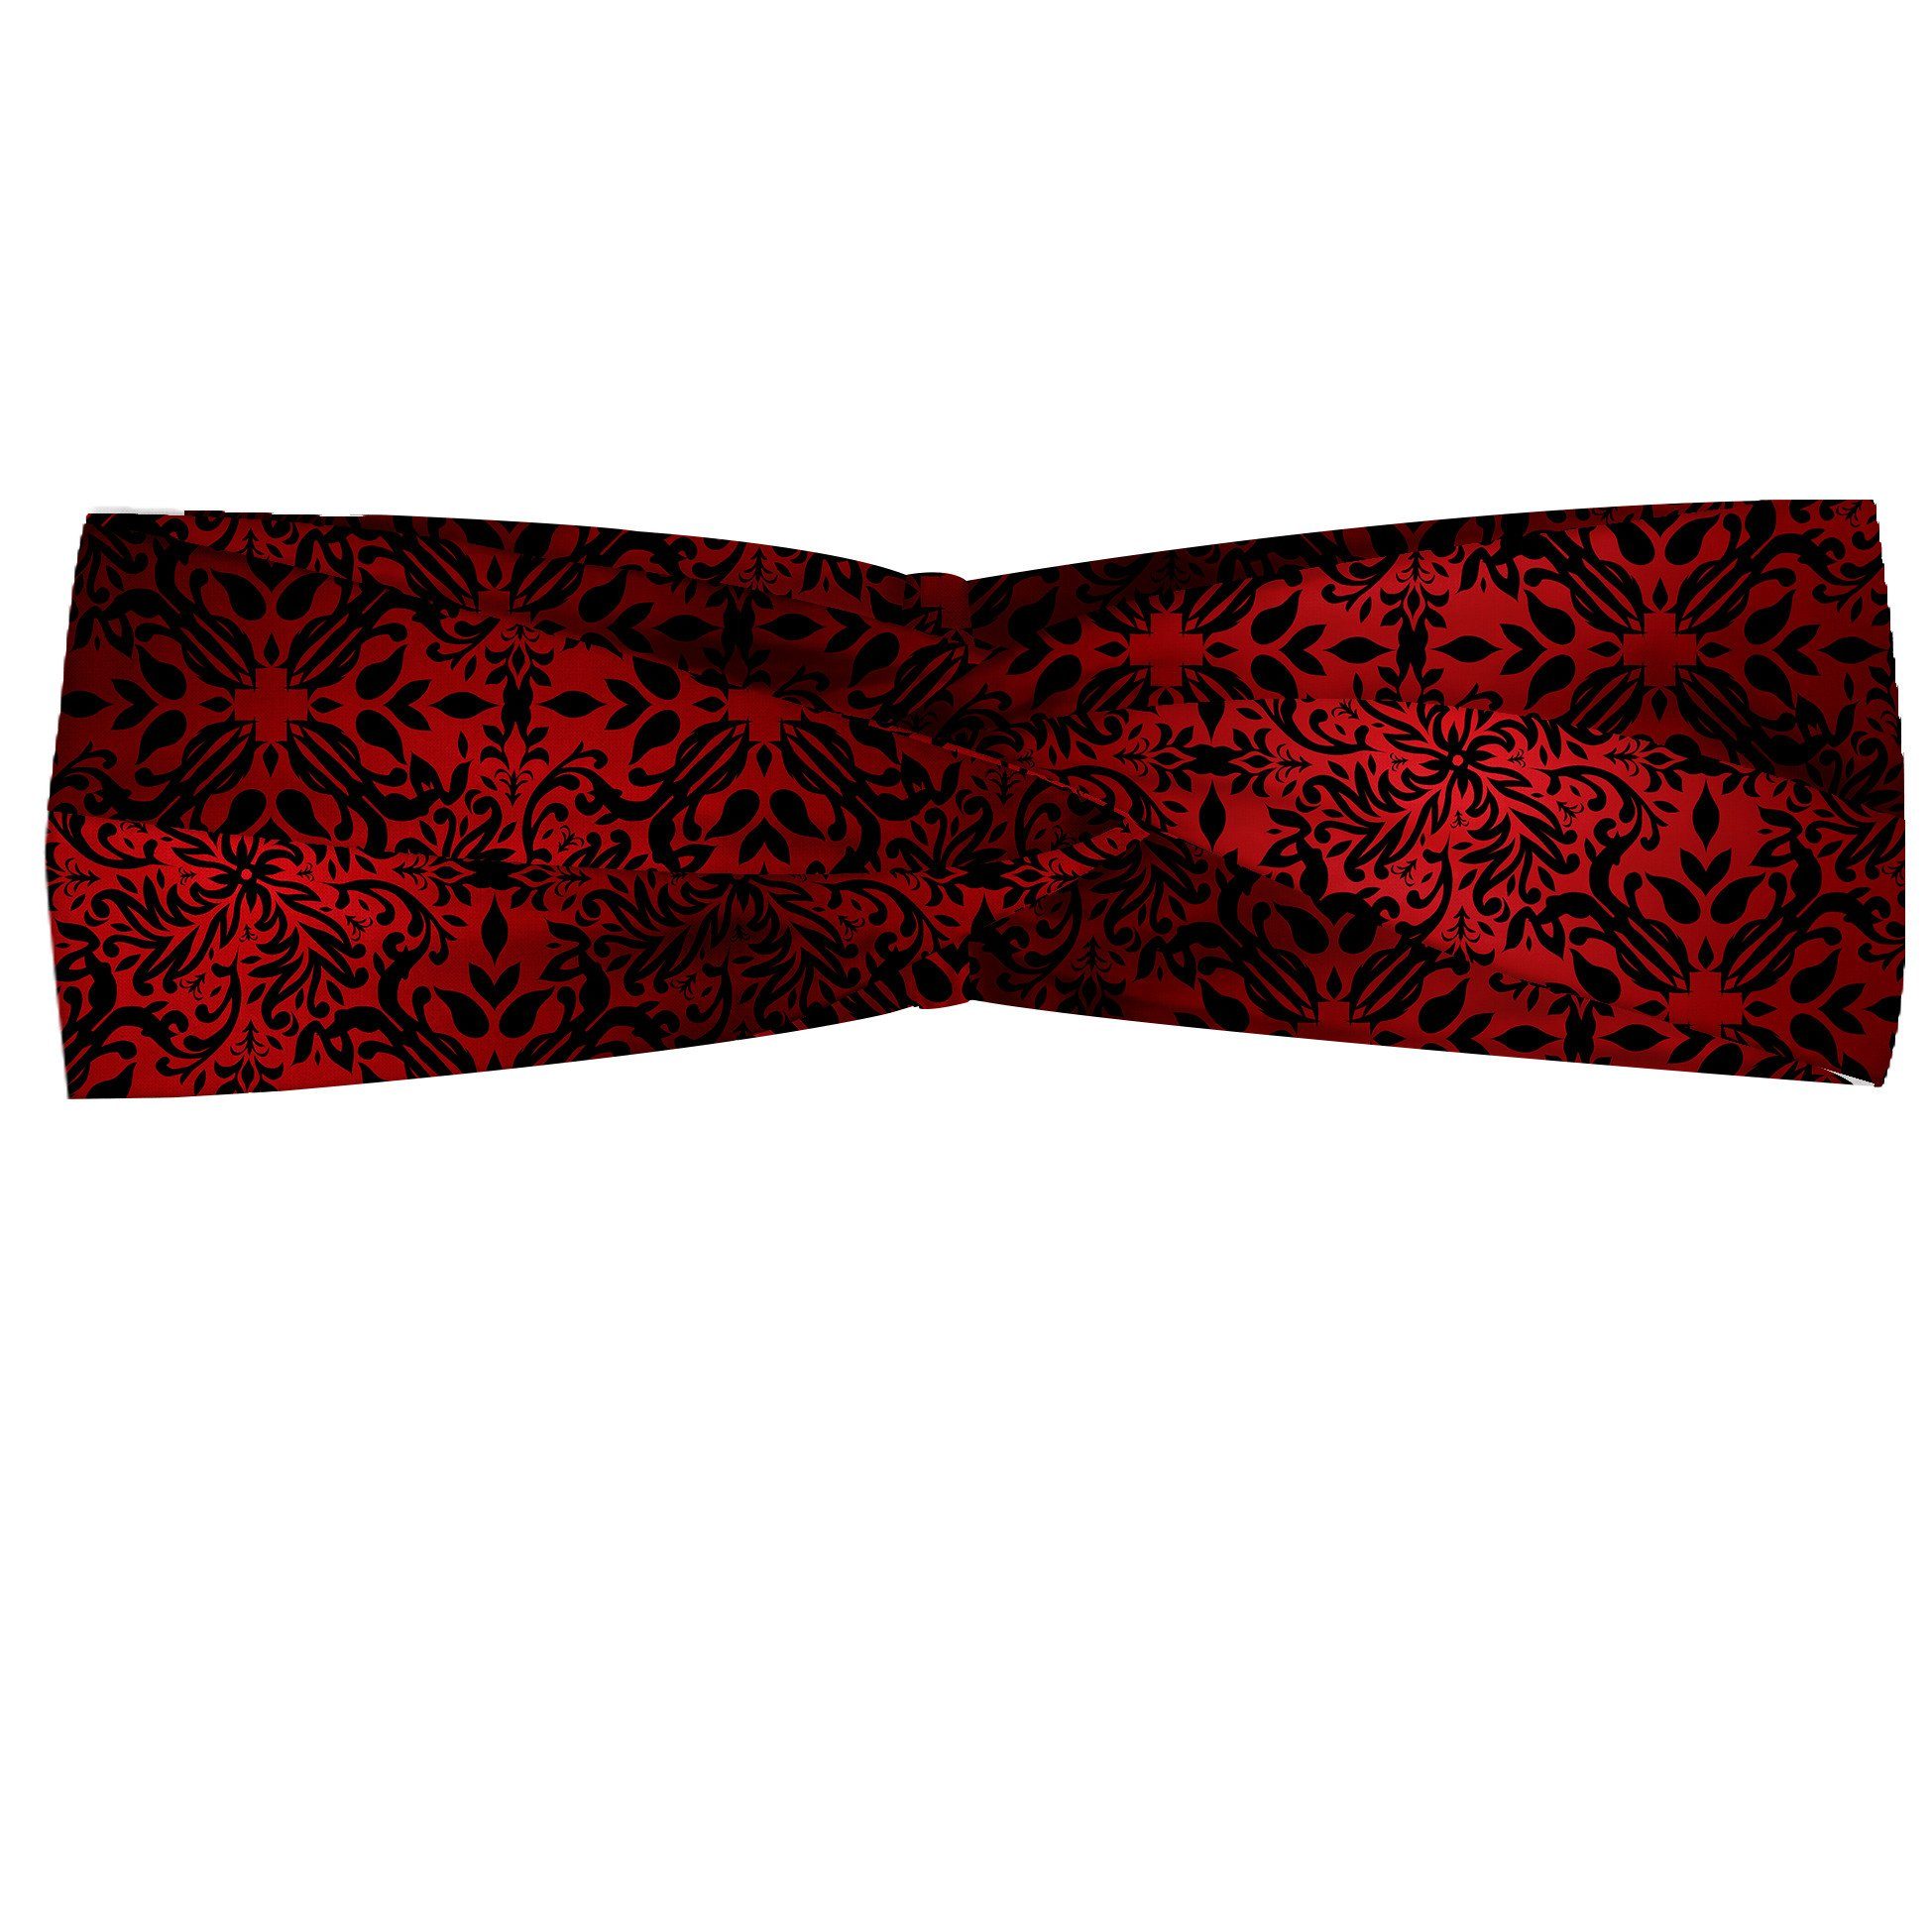 Abakuhaus Stirnband Elastisch und Angenehme alltags accessories rot schwarz Orient Blumen Blätter | Stirnbänder